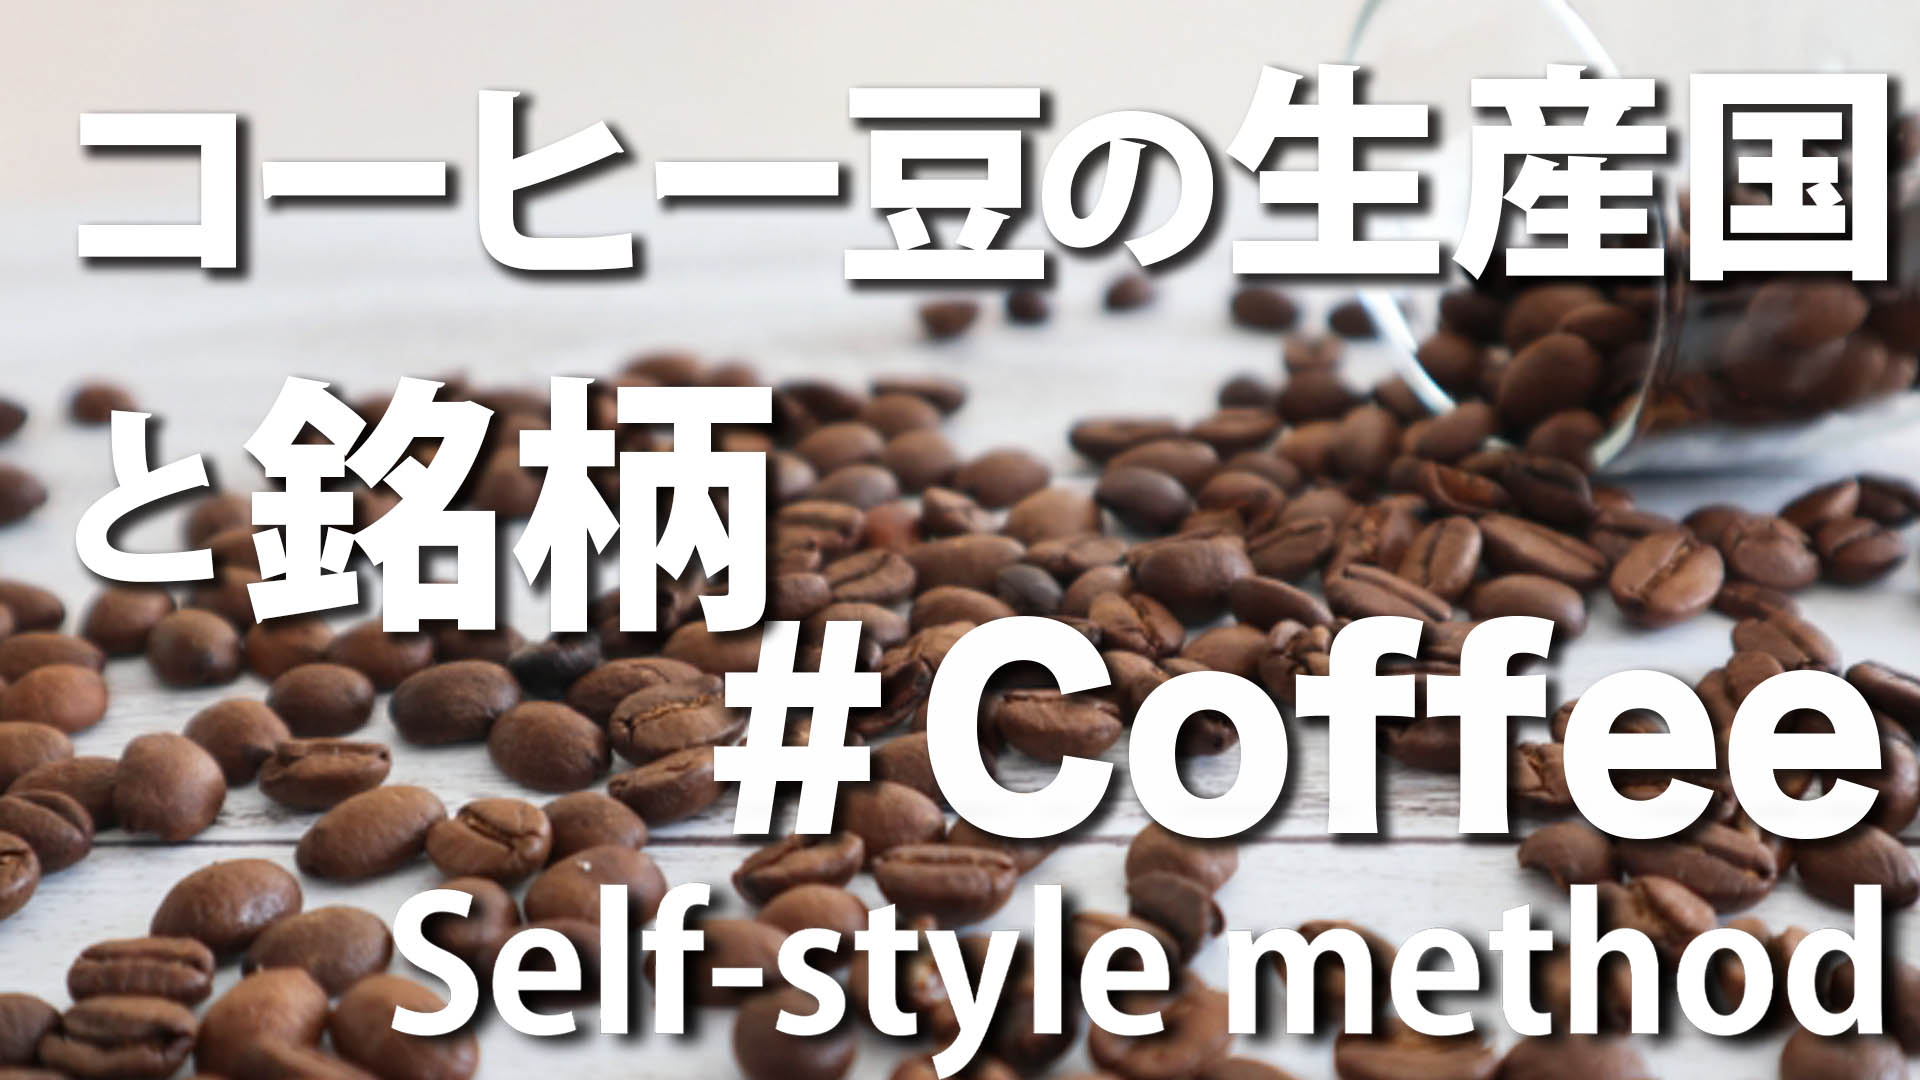 コーヒーの生産国と銘柄 10傑＋α【初心者向け】 | SELF STYLE METHOD 036Factry